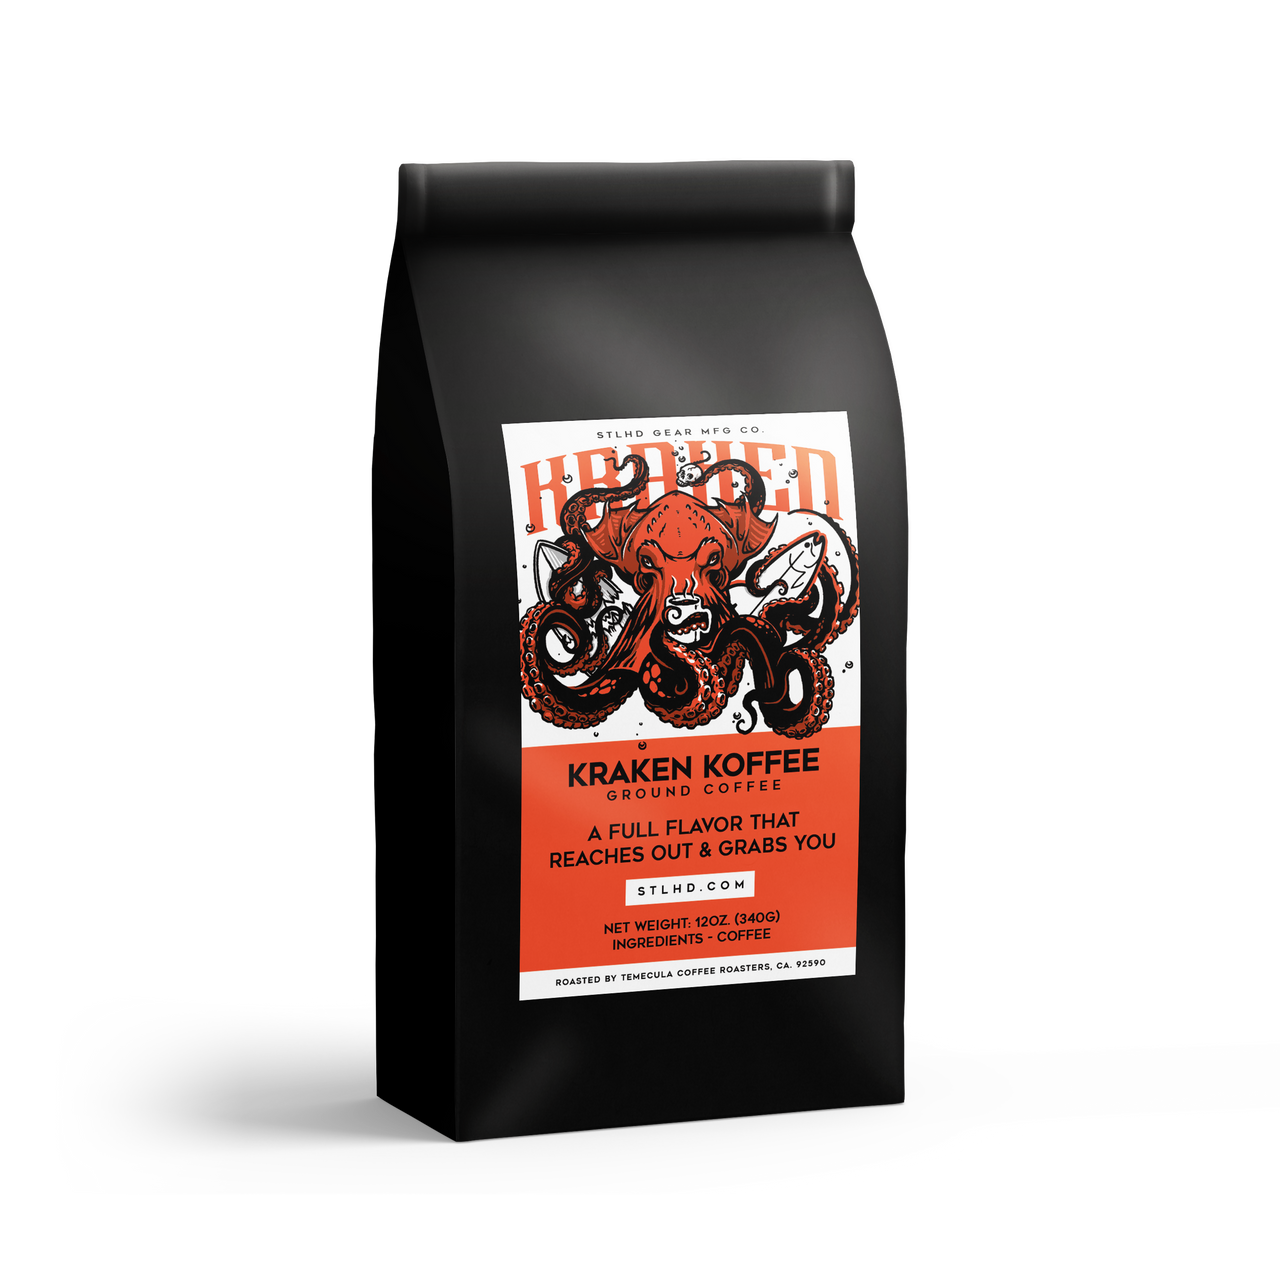 STLHD Kraken Koffee Ground Coffee - Medium Roast - H&H Outfitters